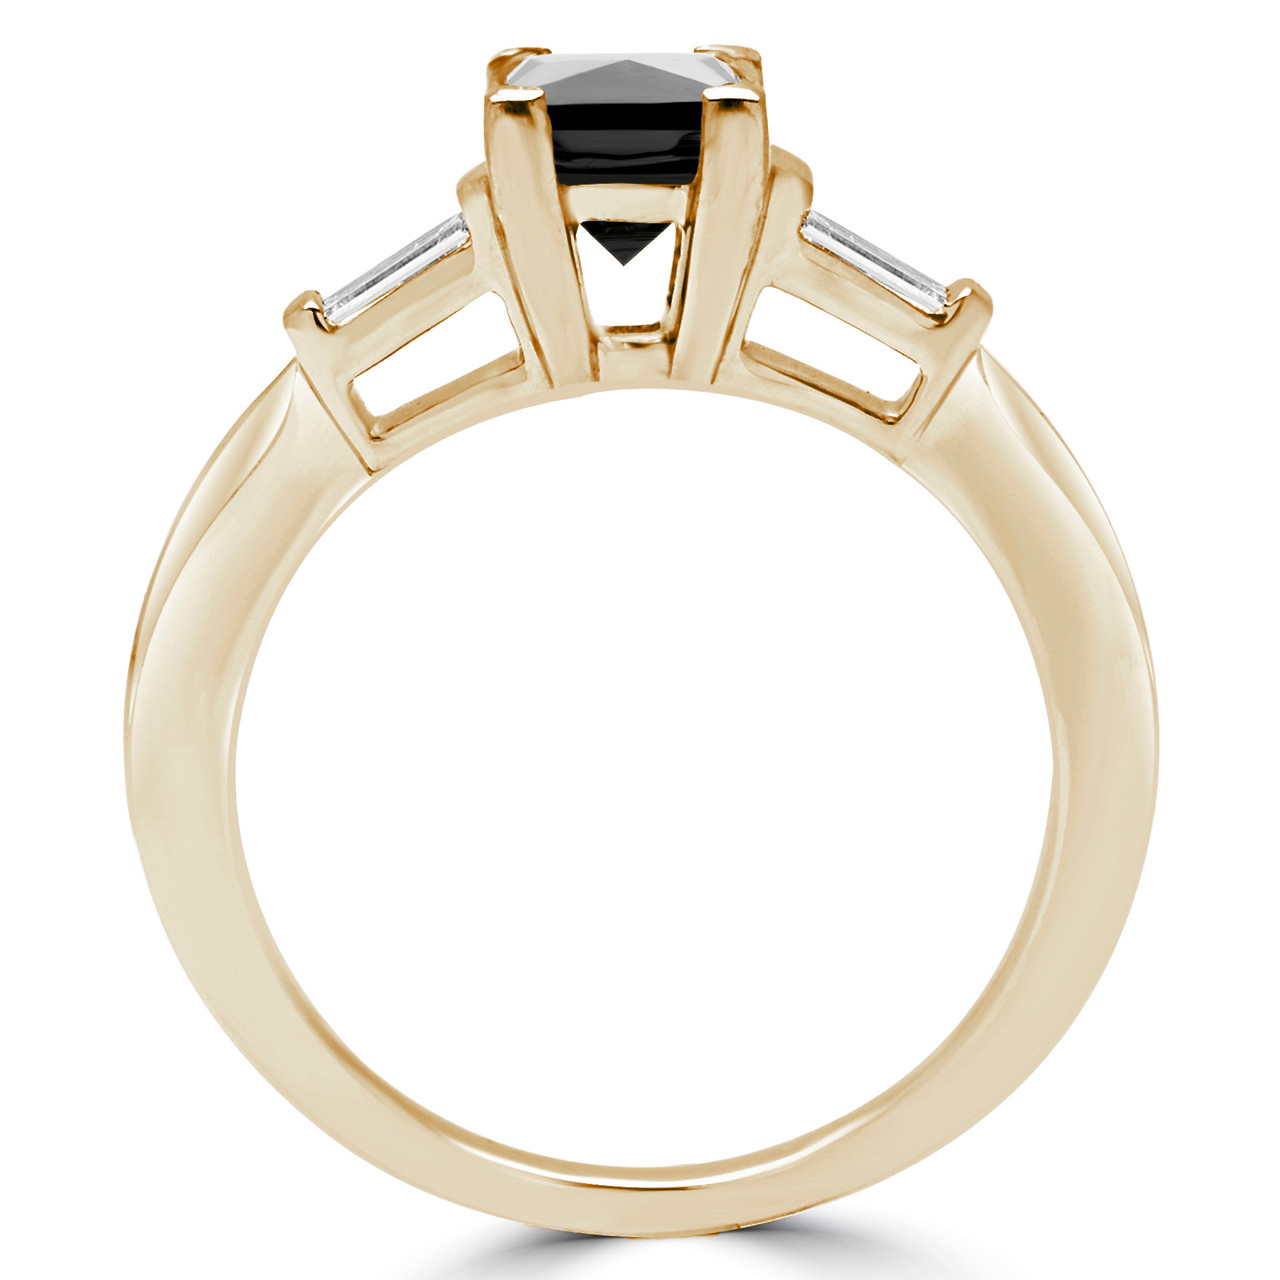 3-Stone Baguette Ring – Shahla Karimi